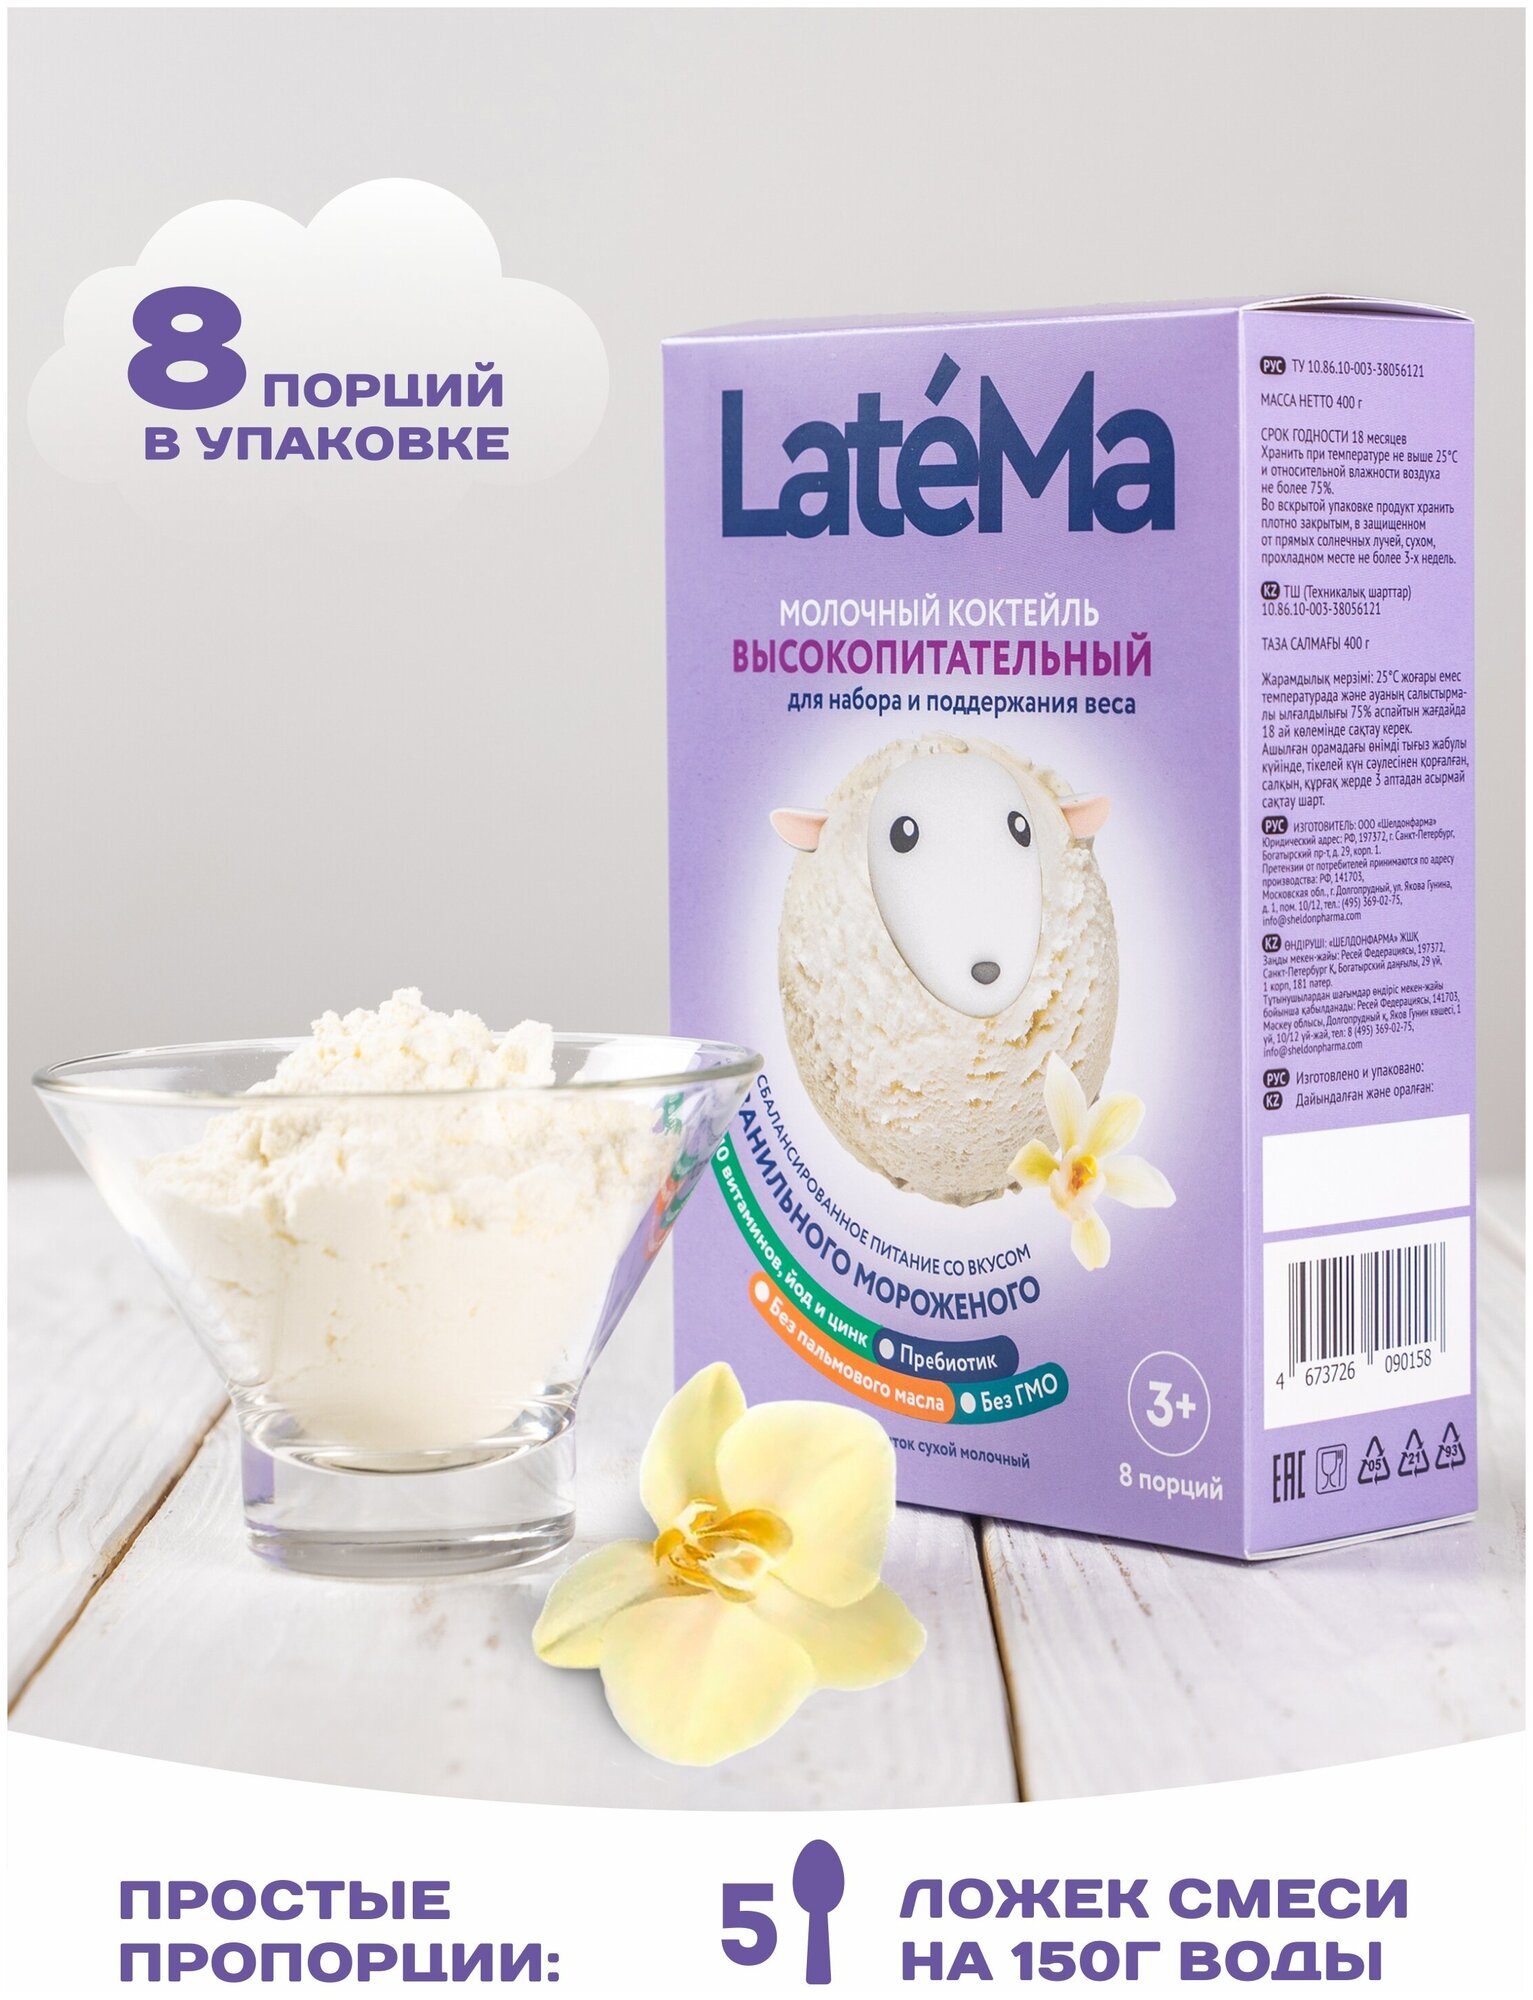 Молочная смесь для приготовления коктейля LateMa высокопитательная (для набора и поддержания веса) со вкусом ванильного мороженого